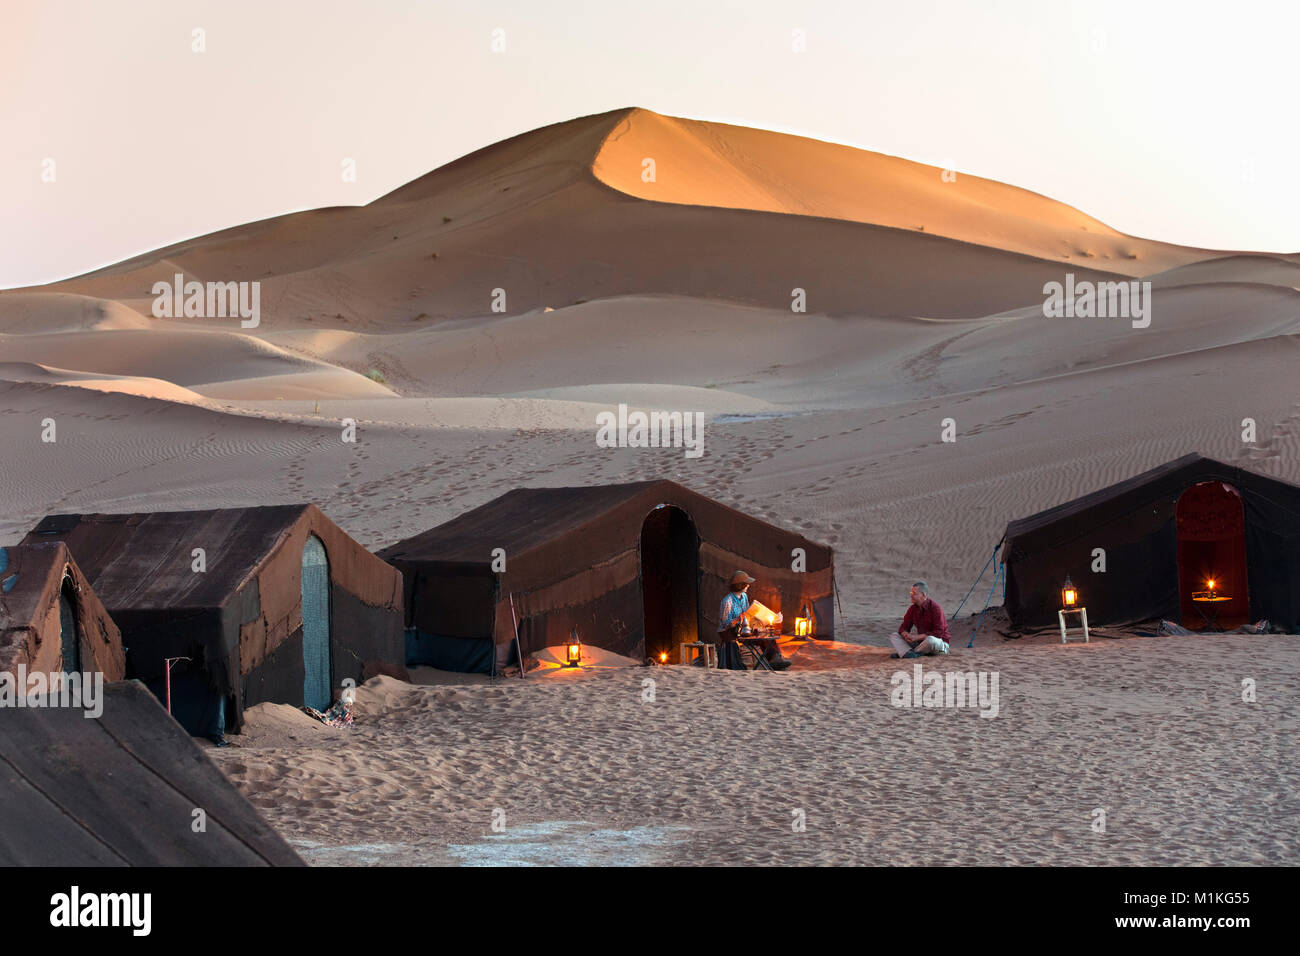 Le Maroc, Mhamid, Erg Chigaga dunes de sable. Désert du Sahara. Camp de vacances, un bivouac. Les touristes, en couple, en face de la tente au coucher du soleil. Banque D'Images